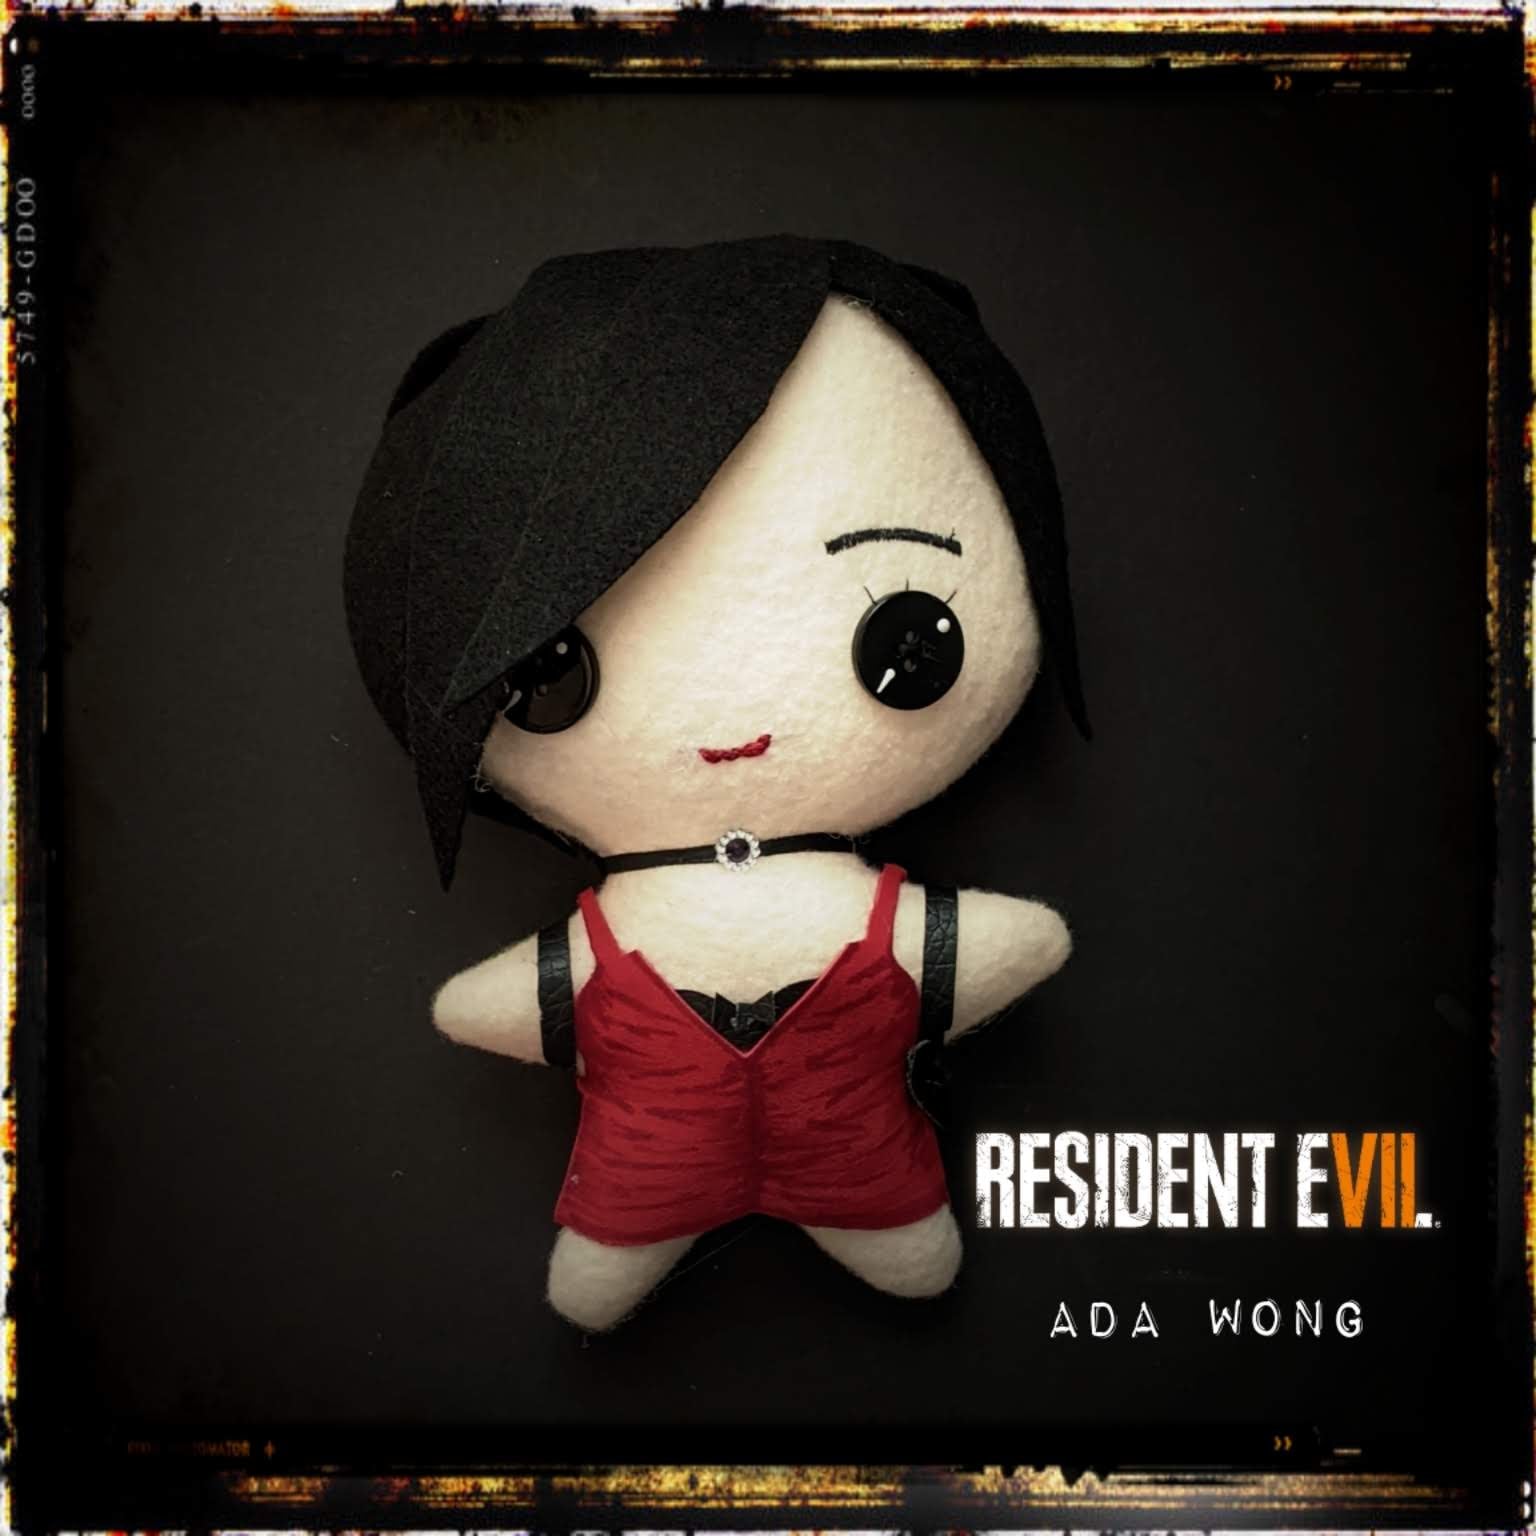 Resident Evil 4 Remake Game Ada Wong Original Design Cosplay Plush Toy